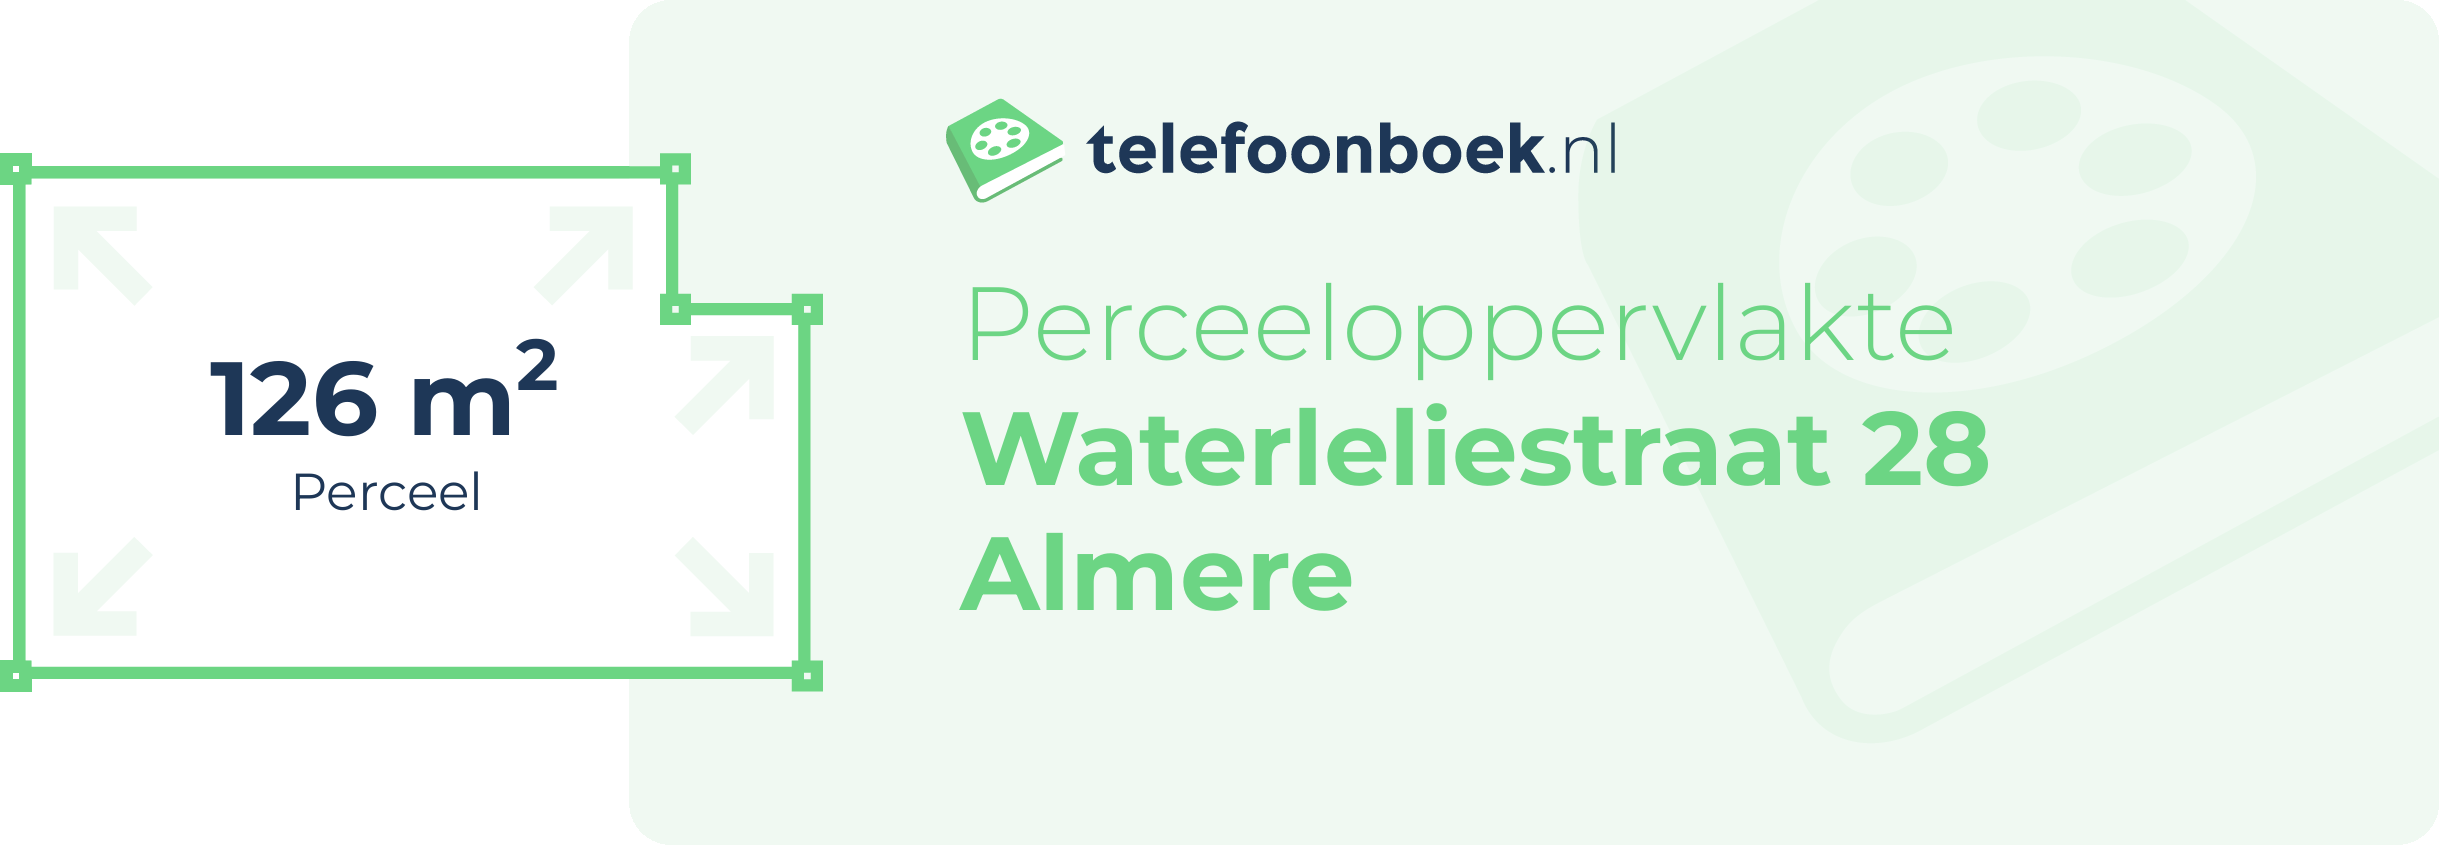 Perceeloppervlakte Waterleliestraat 28 Almere